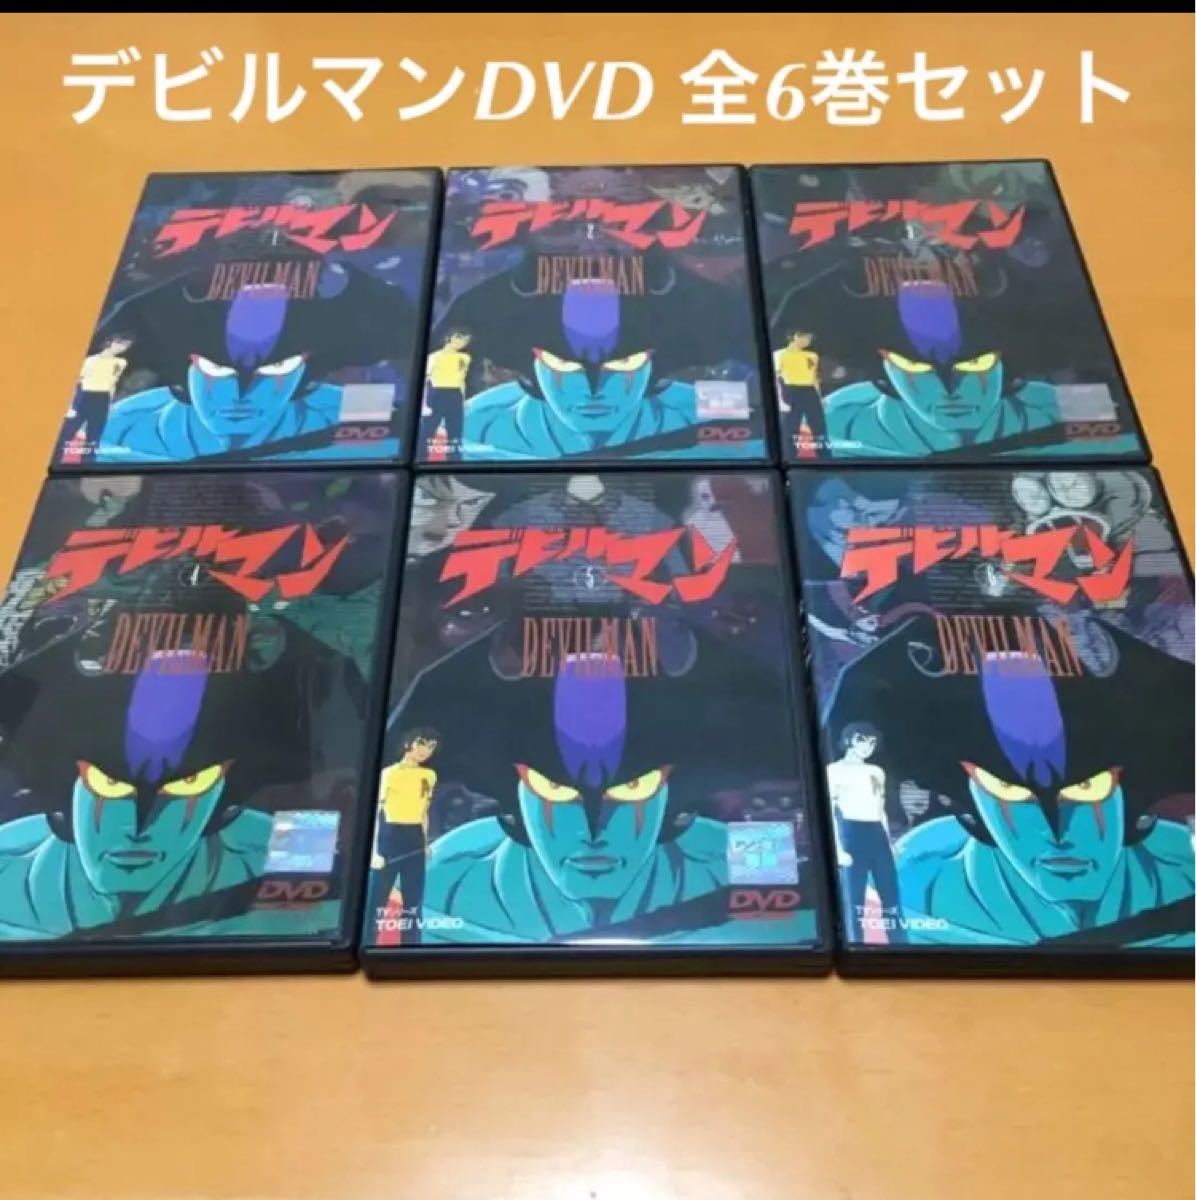 デビルマン DVD 全6巻セット 1972年〜1973年放送